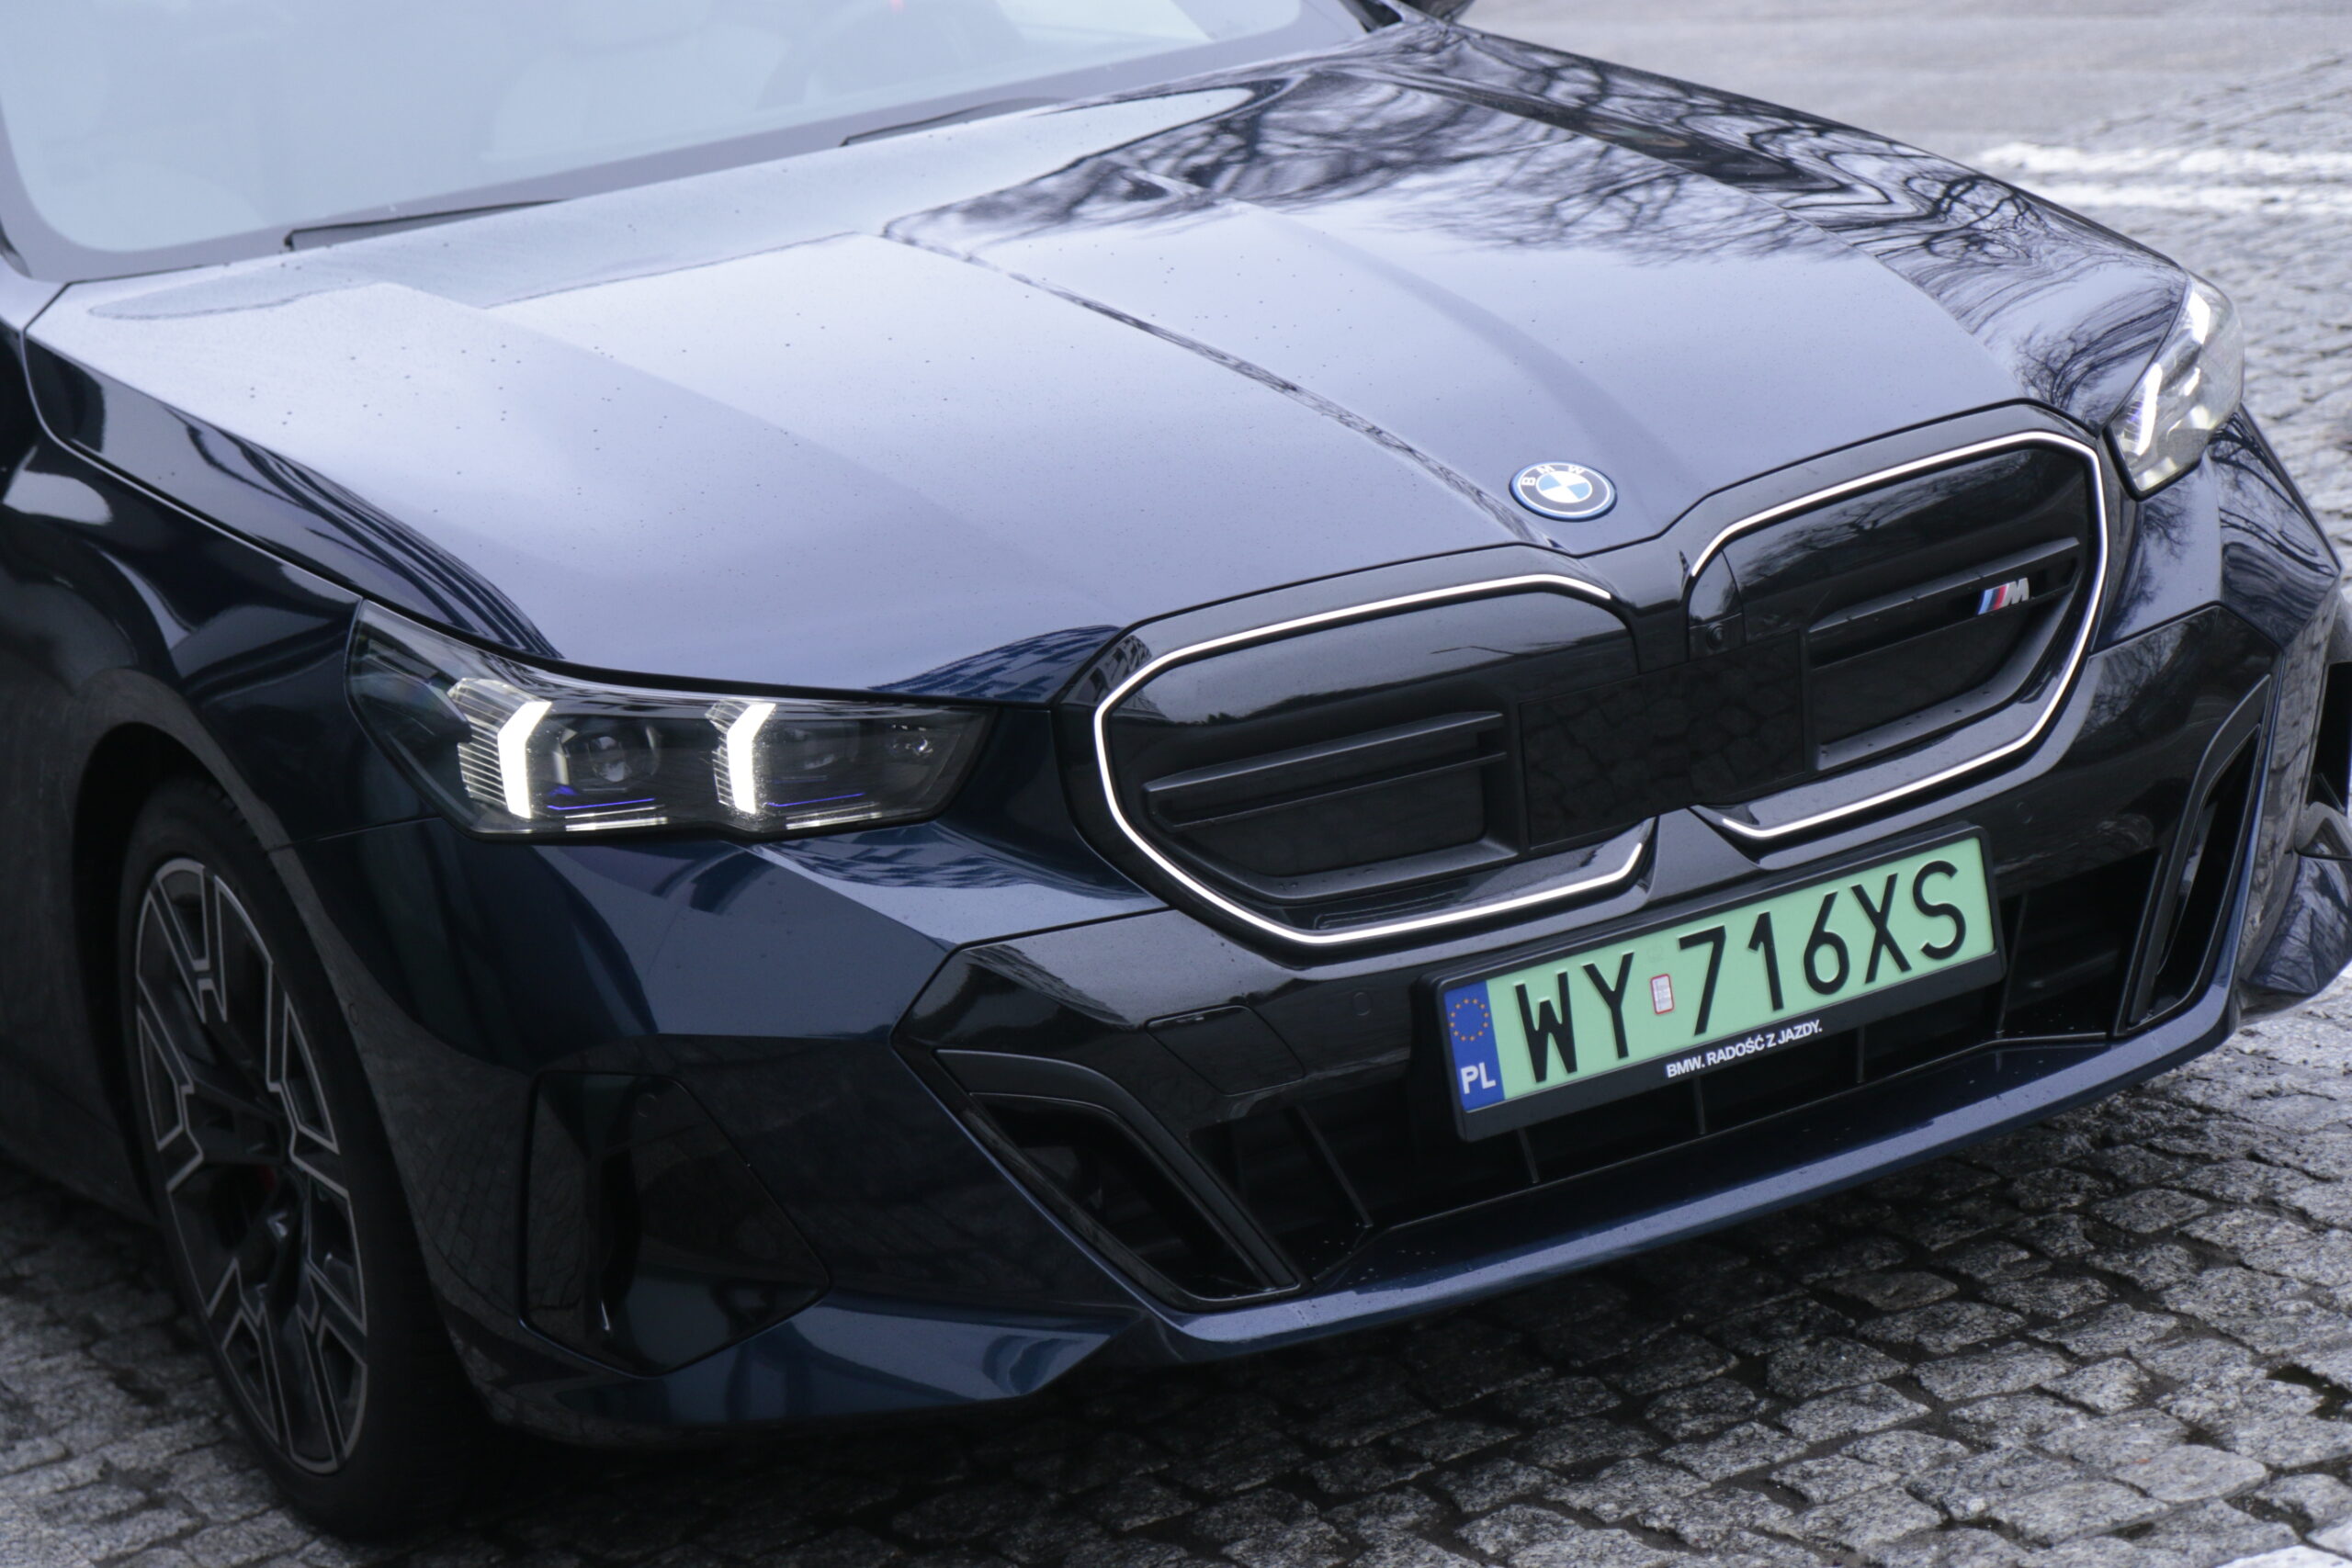 Częściowe zbliżenie na przód testowanego, czarnego samochodu BMW i5 z widocznym logo, oznaczeniem modelu M, reflektorami LED i tablicą rejestracyjną z Polski.